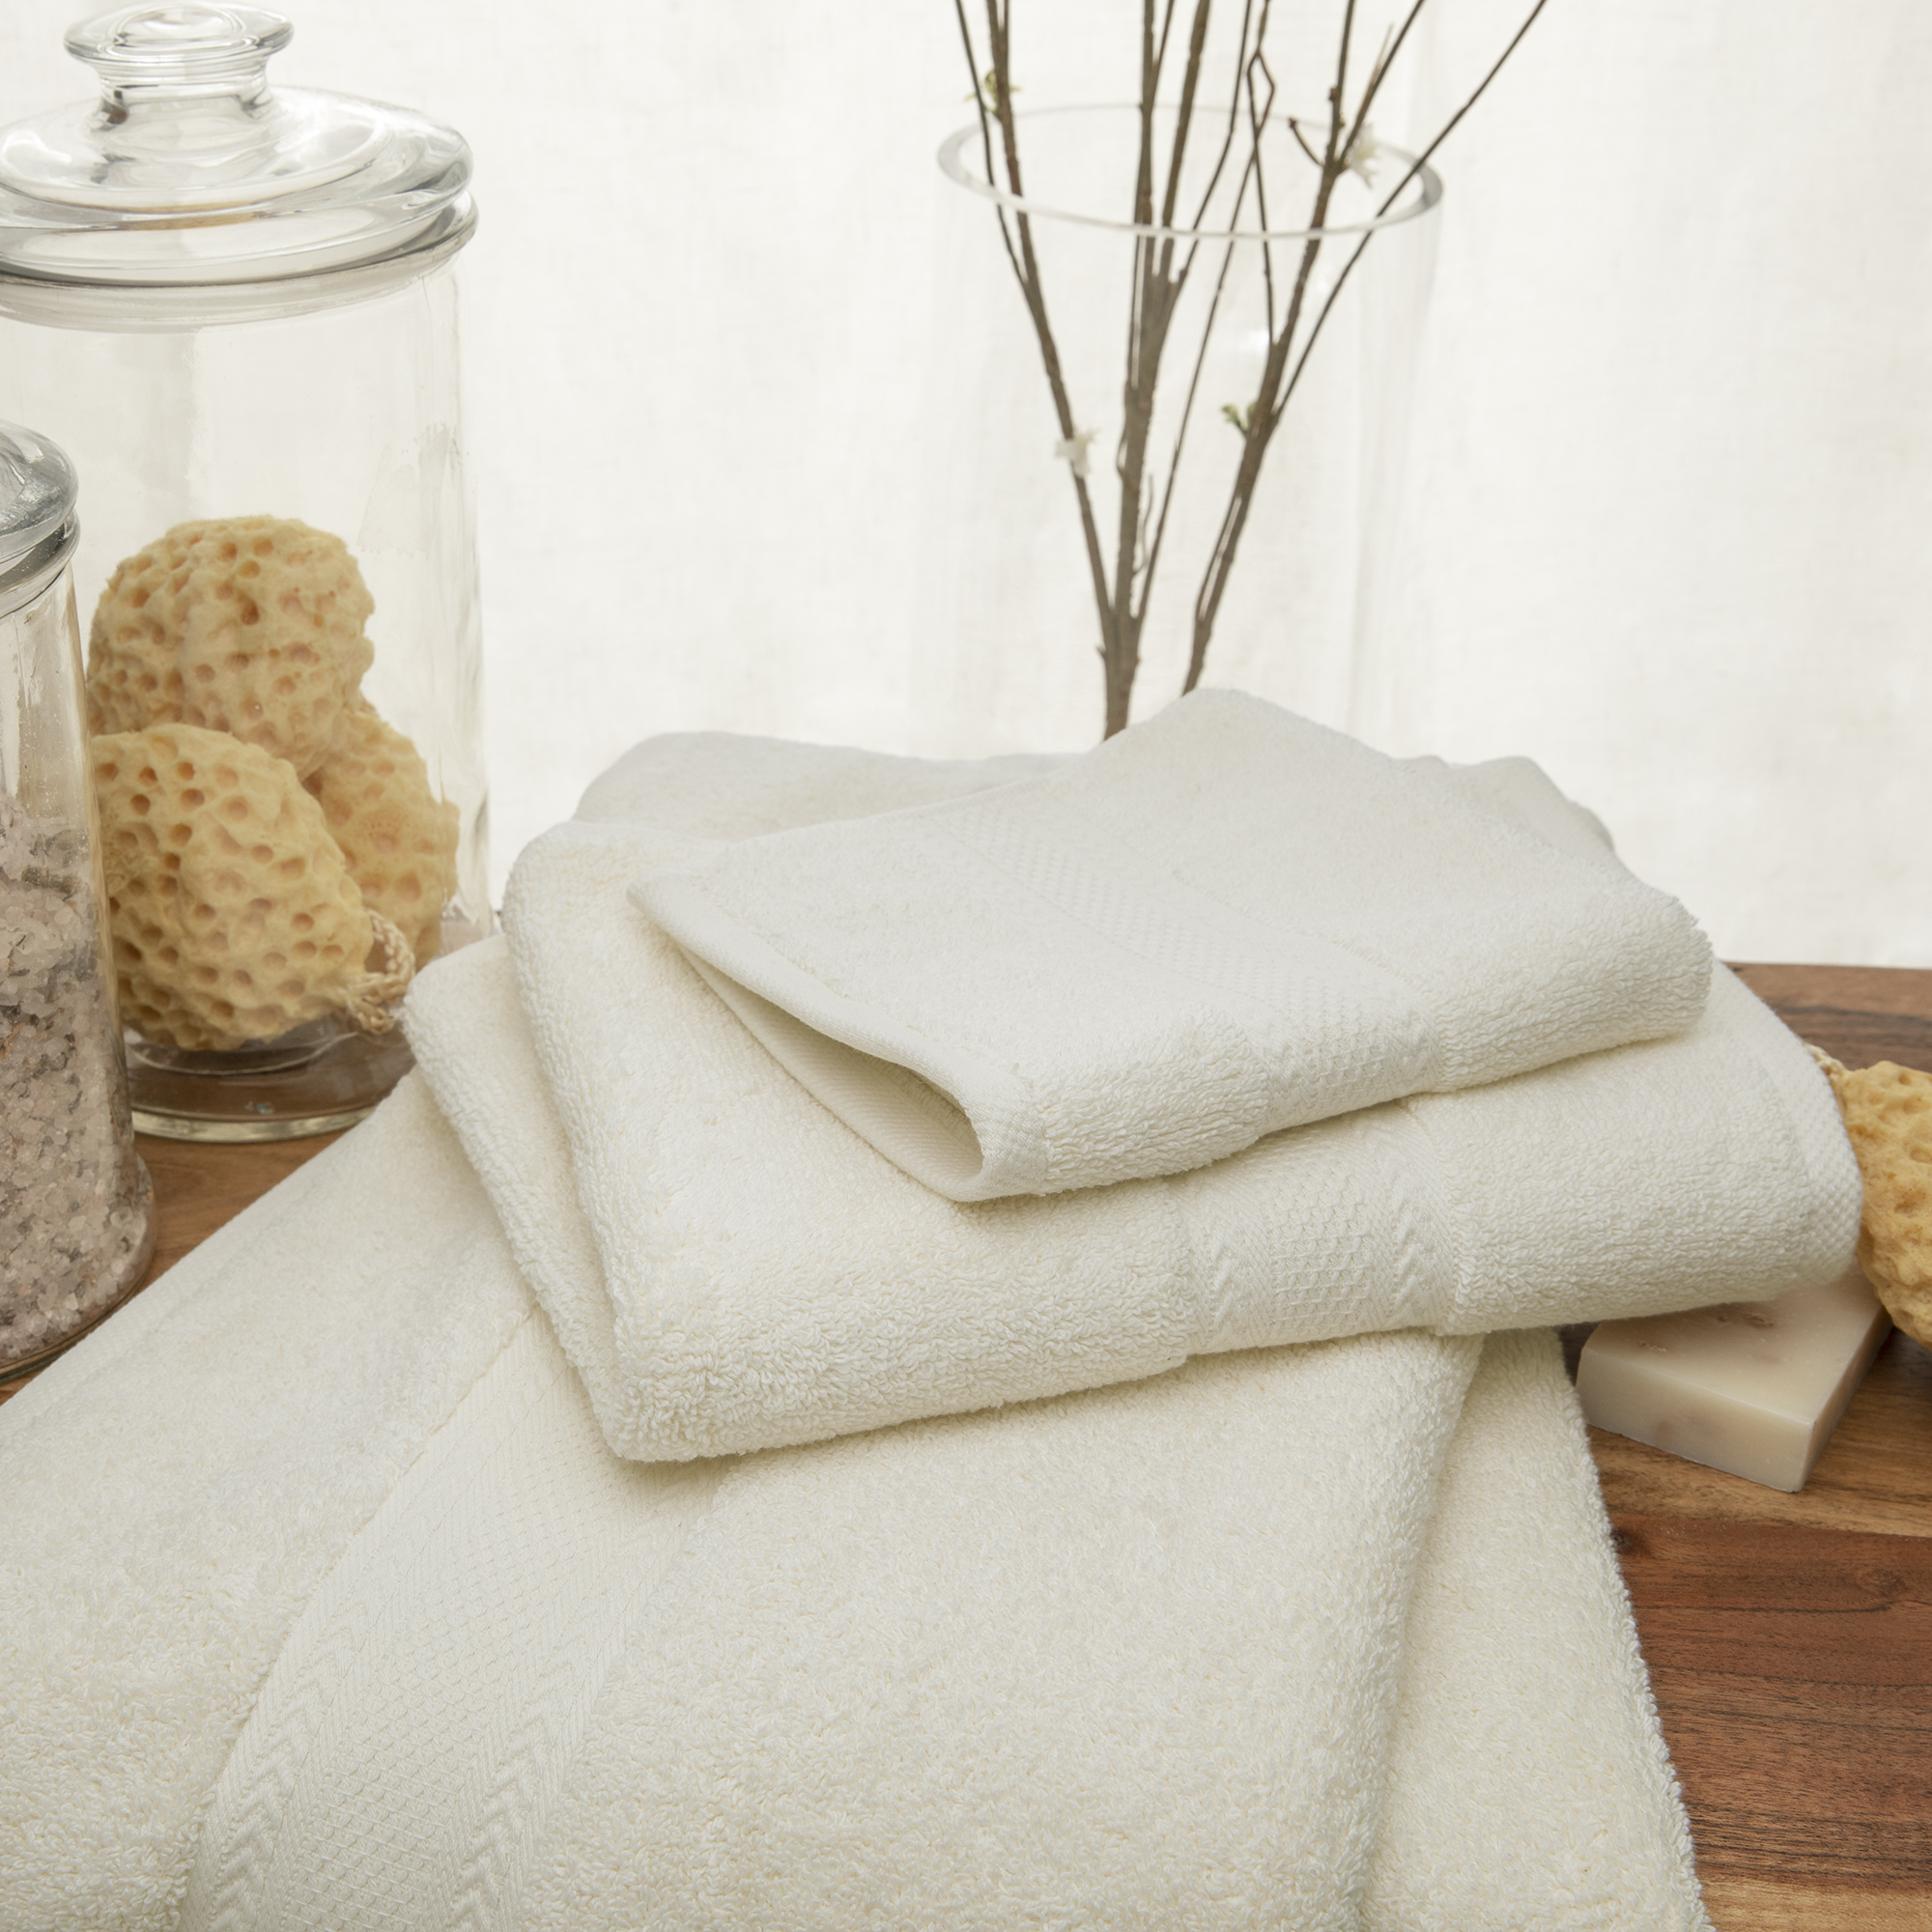 Endure Luxury Super Soft 100 Percent Cotton 6 Piece Bath Towel Set - image 3 of 3